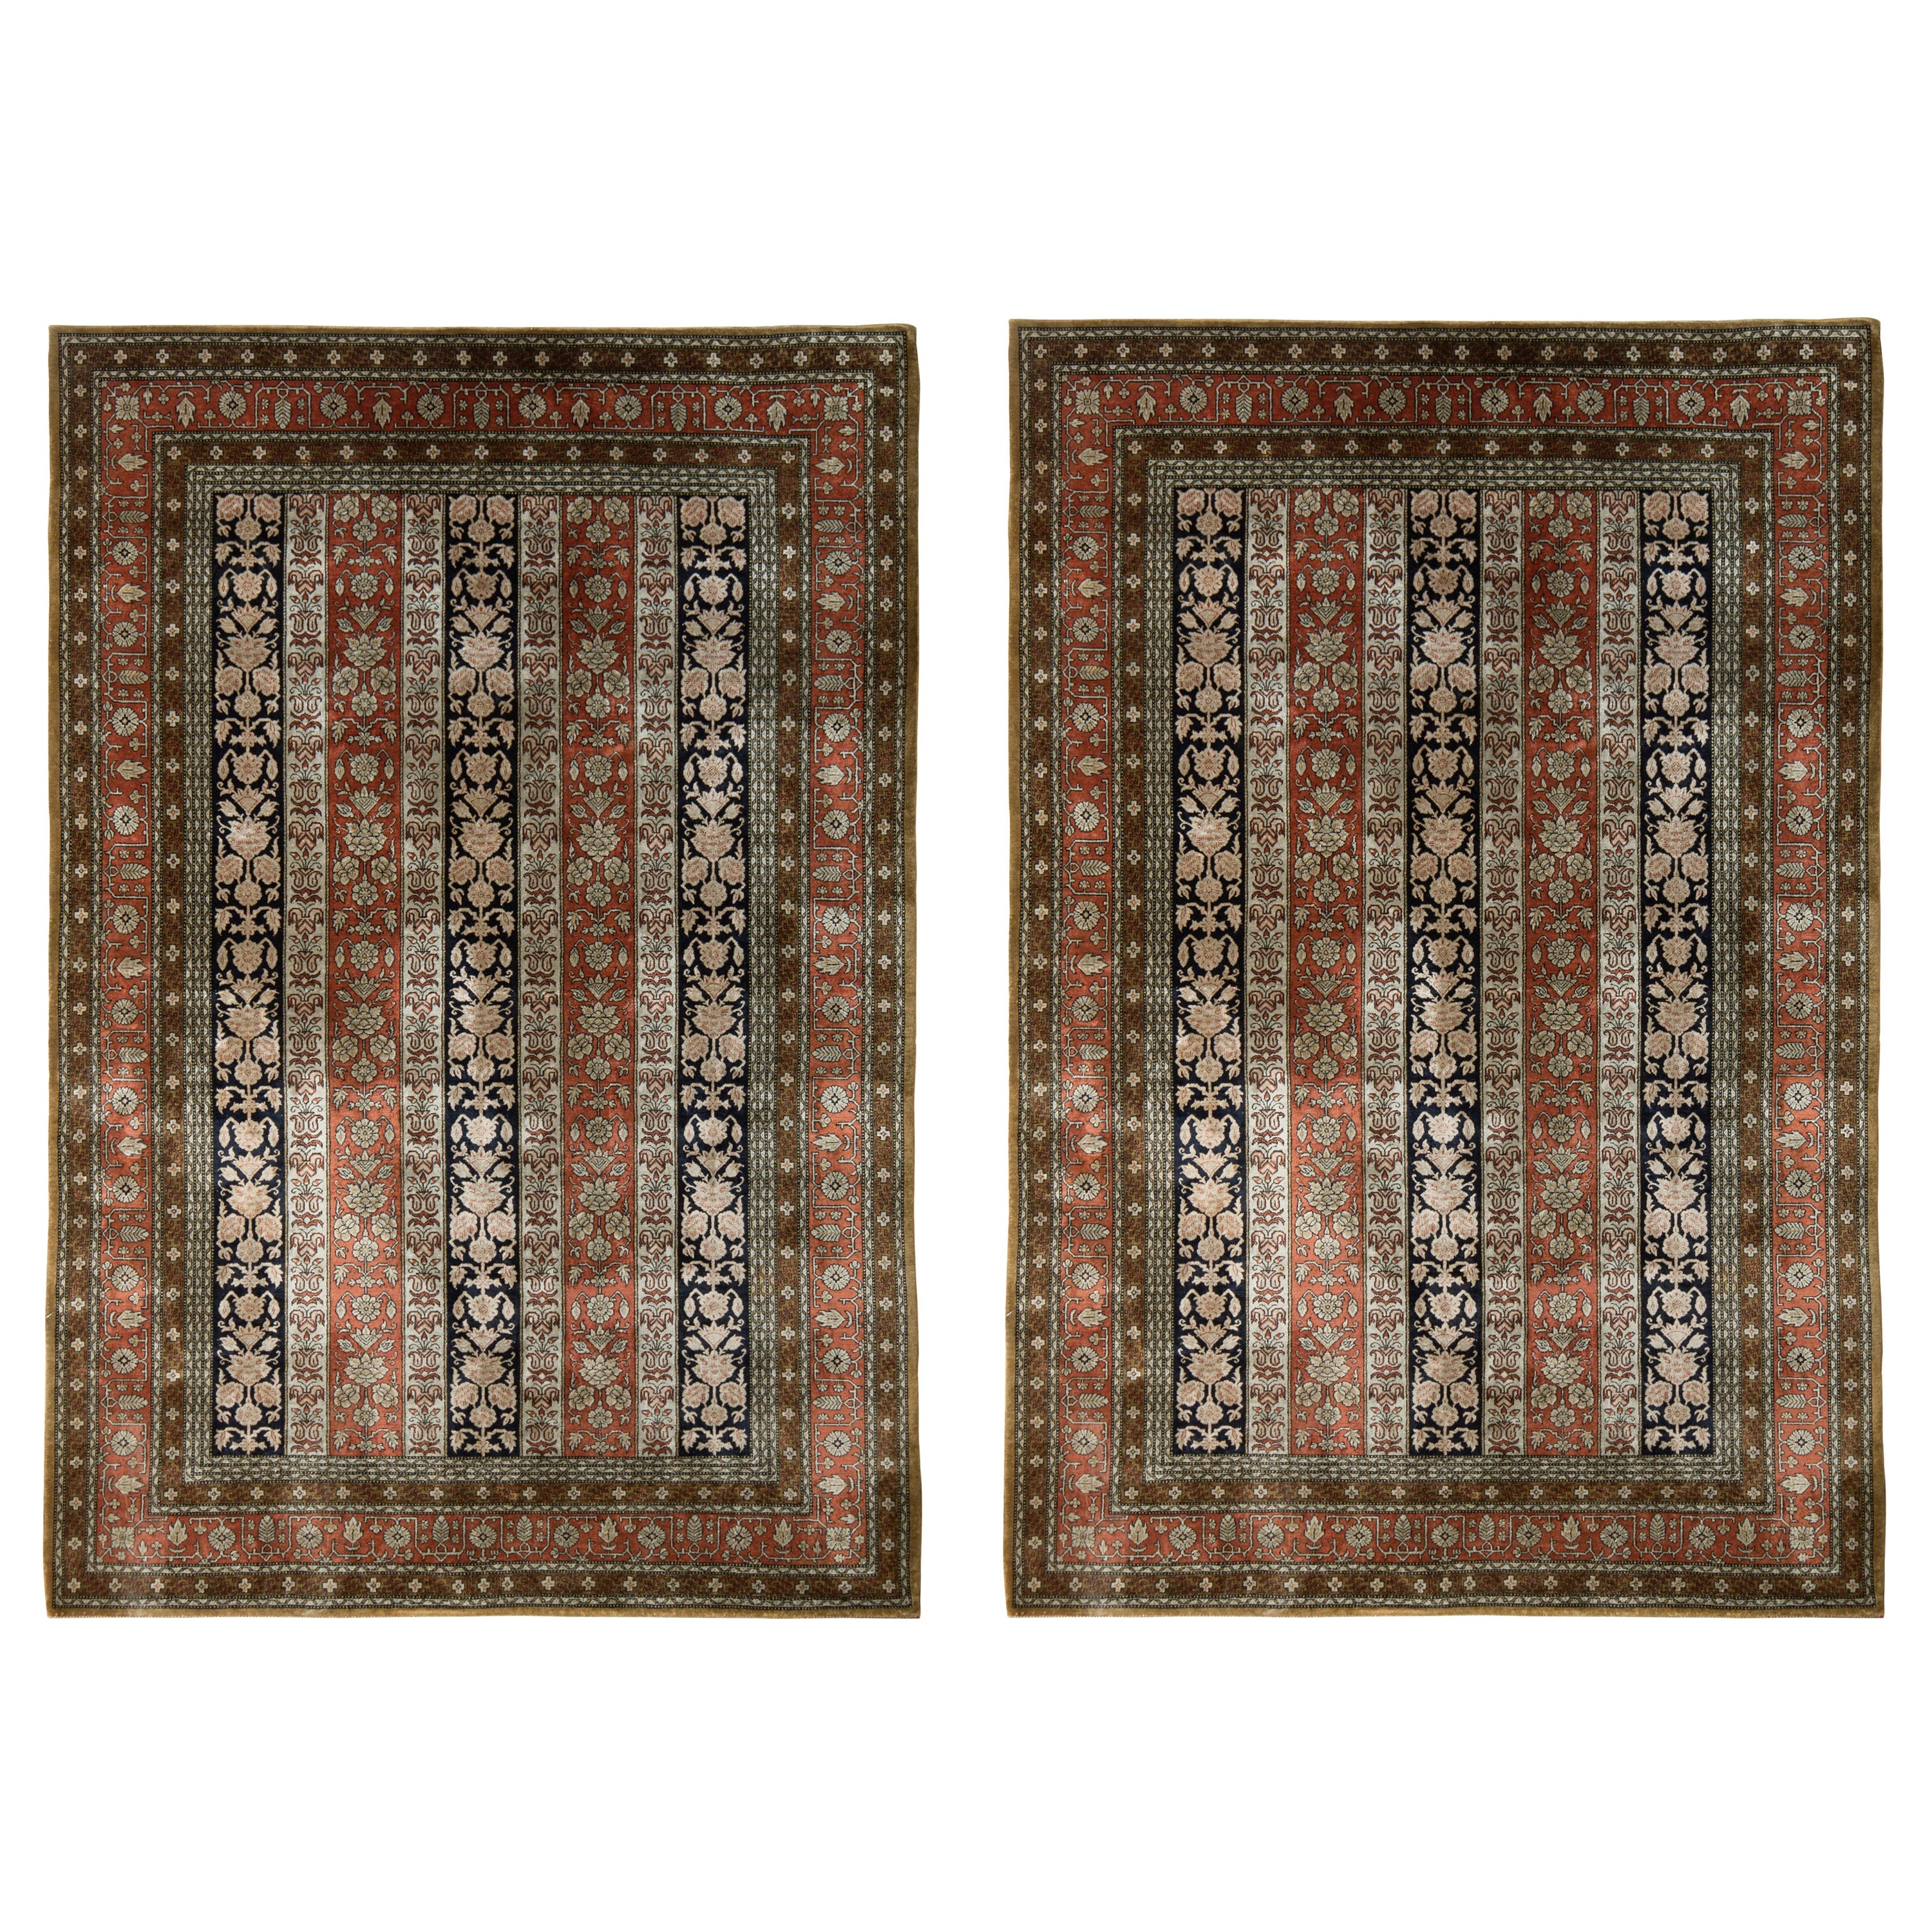 Vintage Persian Qum Rug Pair in Red & Beige-Brown Floral Pattern, by Rug & Kilim